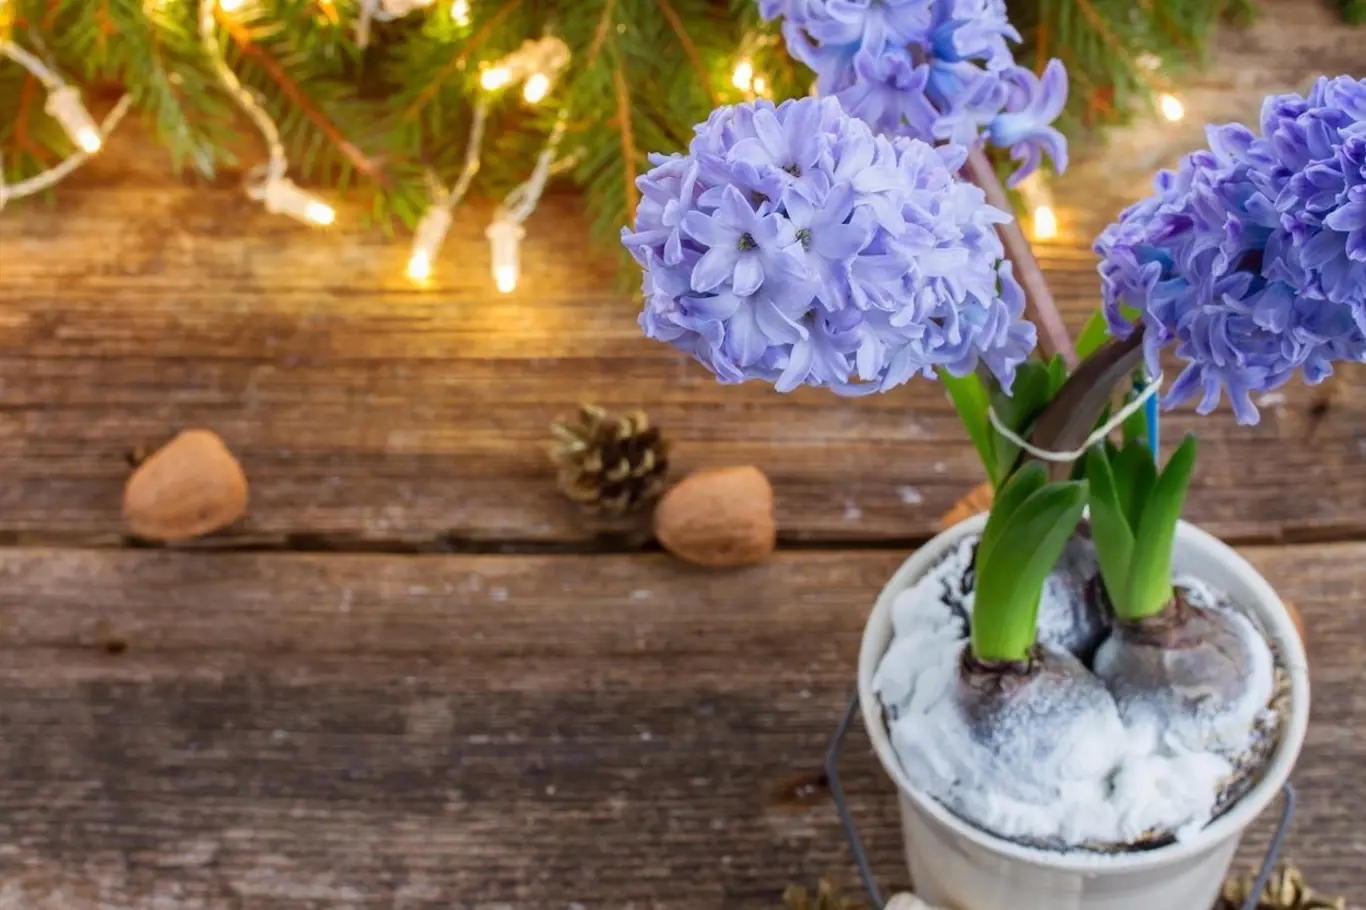 Umíte rychlit hyacinty, aby vám kvetly na vánočním stole?